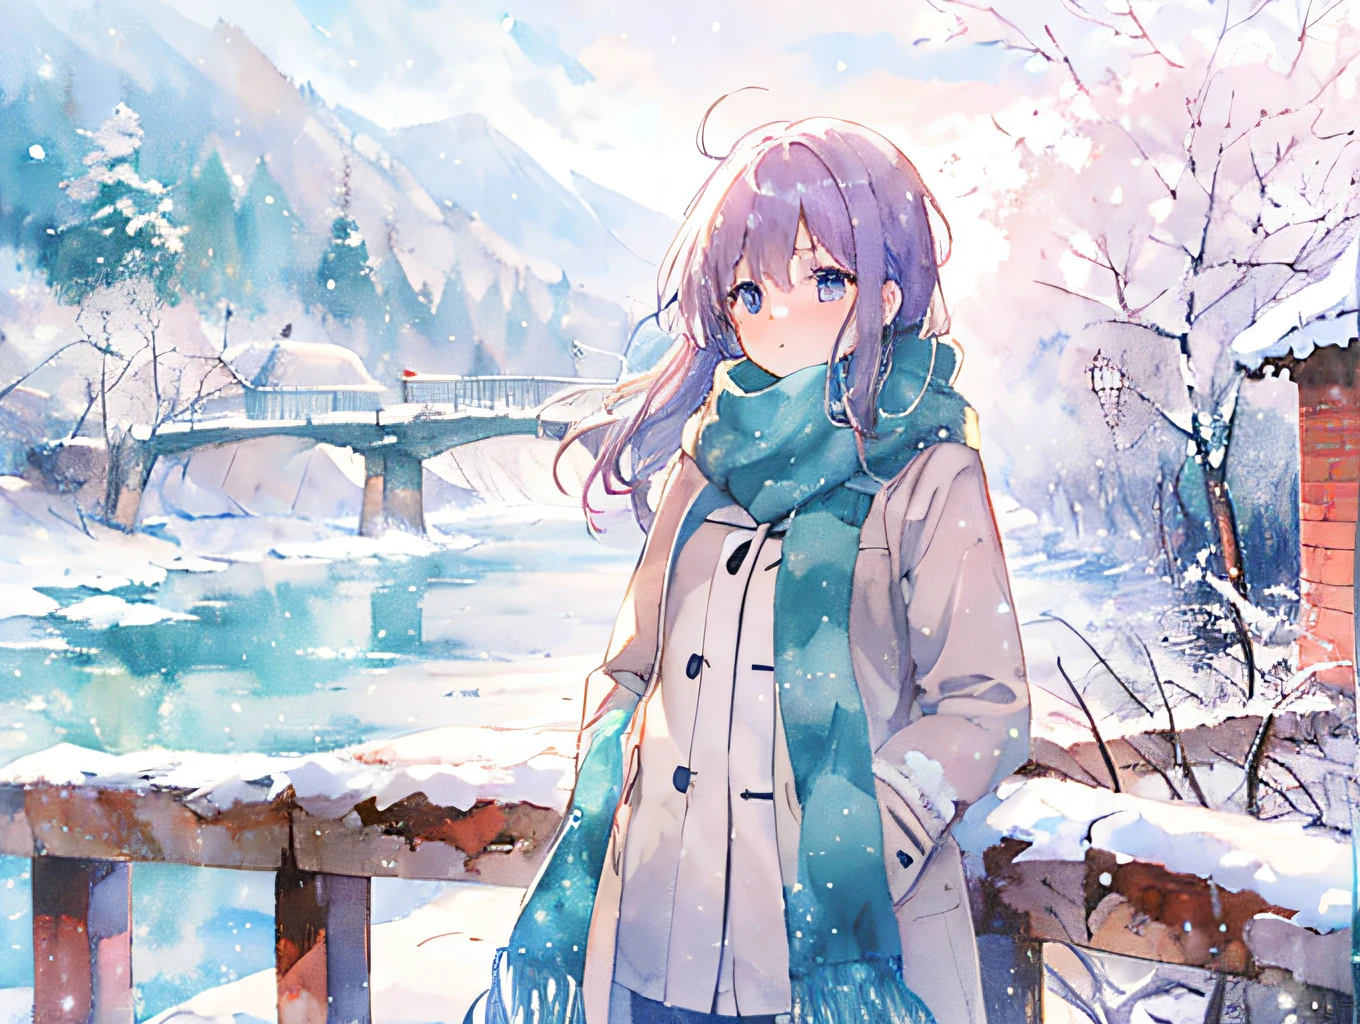 Mädchen im Anime-Stil, Brücke, Verschneite Landschaft, warmer Mantel und Schal, sichtbarer Atem, soft, aquarellartiger Anime-Stil, Weiß und Blau, Verschneiter Tag,